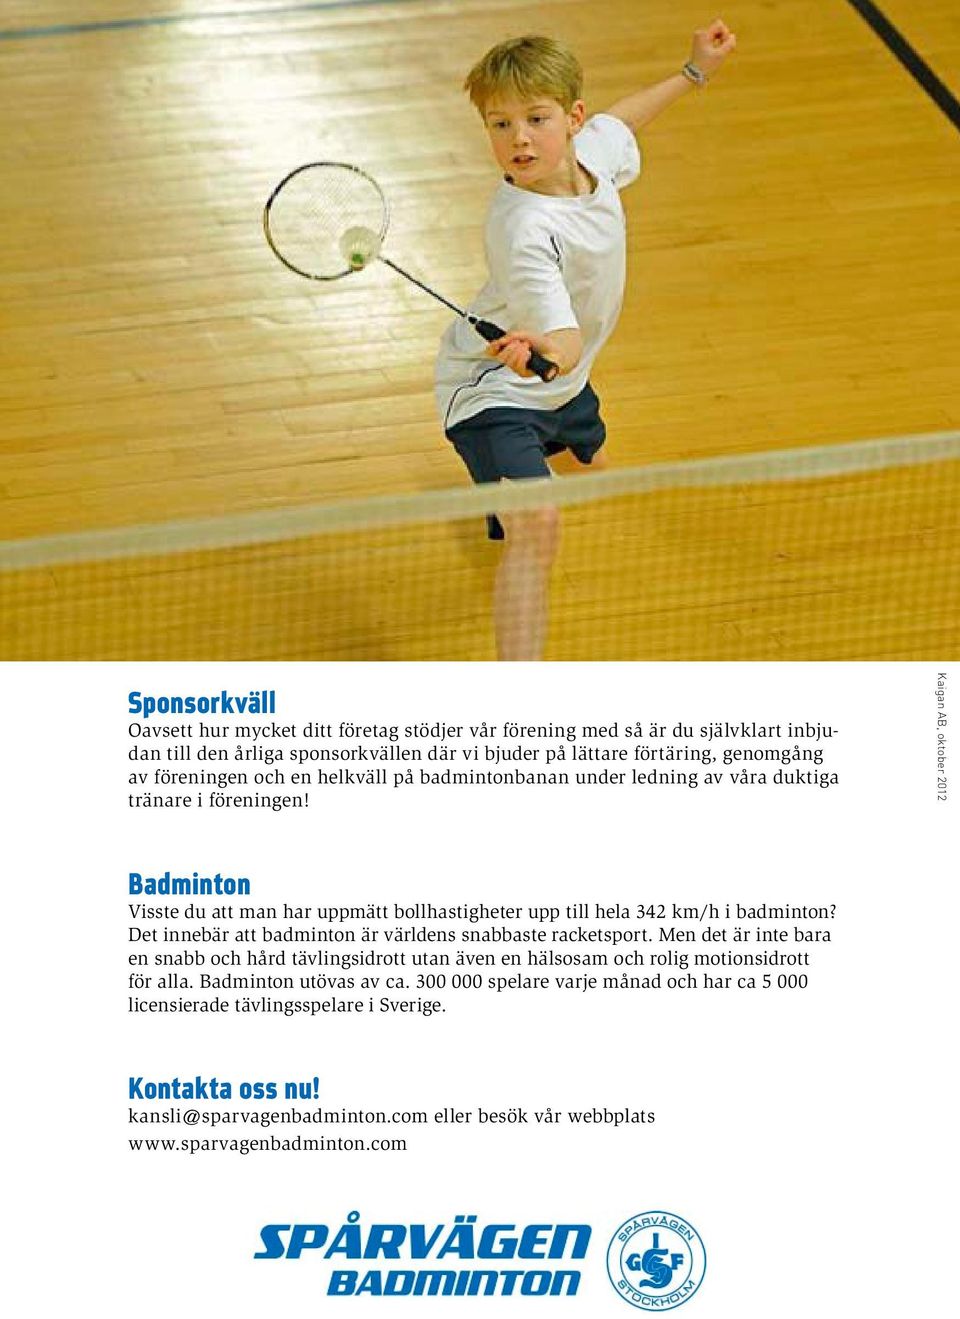 Kaigan AB, oktober 2012 Badminton Visste du att man har uppmätt bollhastigheter upp till hela 342 km/h i badminton? Det innebär att badminton är världens snabbaste racketsport.